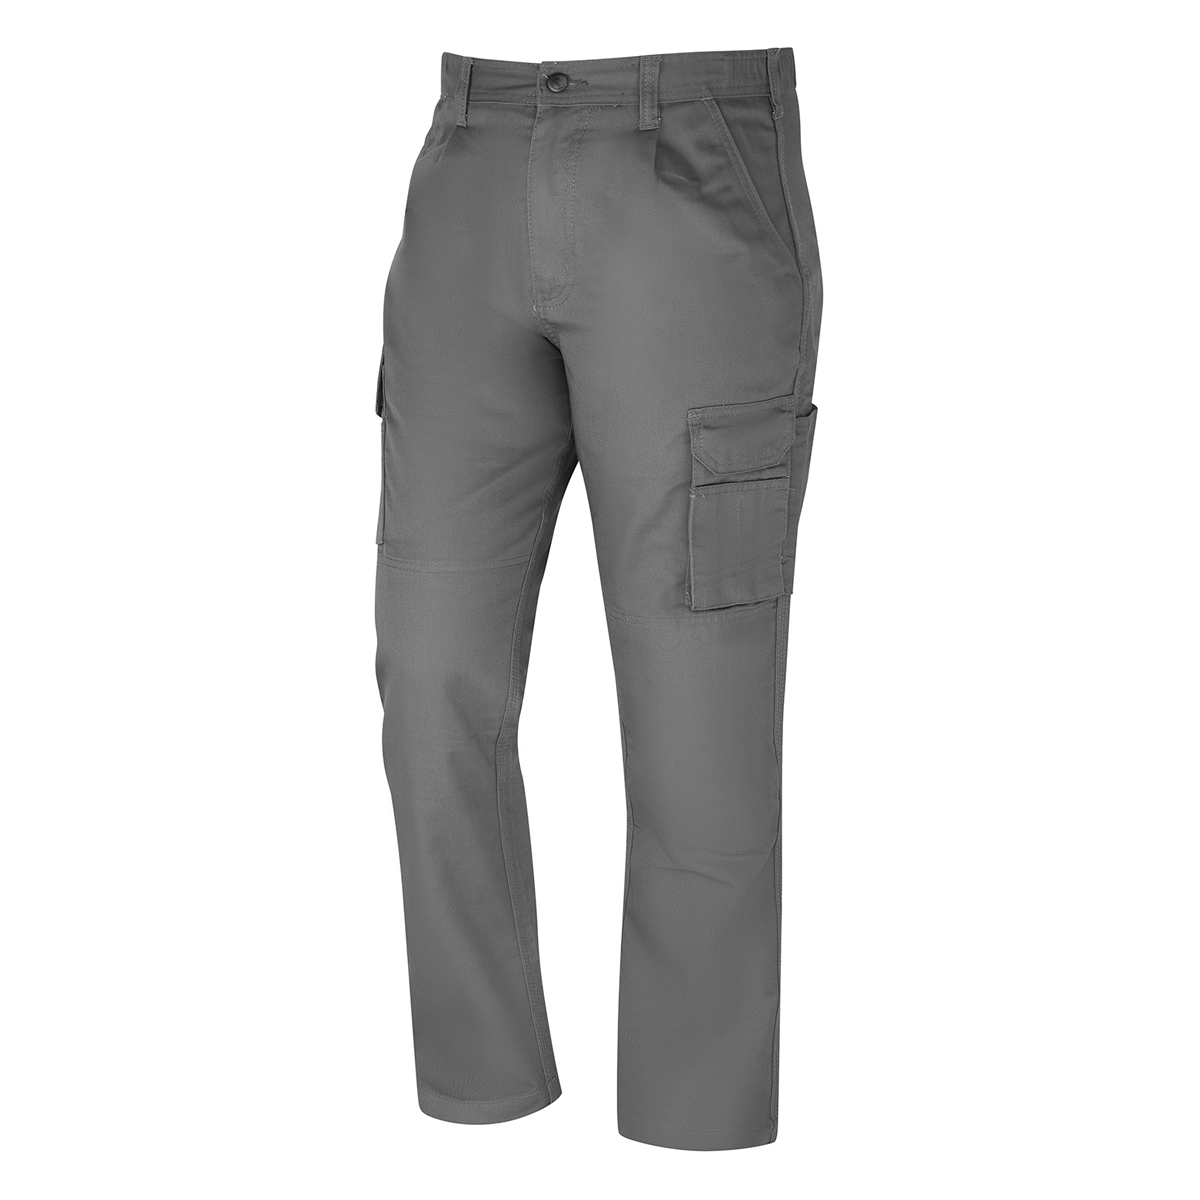 Ladies condor combat trouser - 22r - graphite